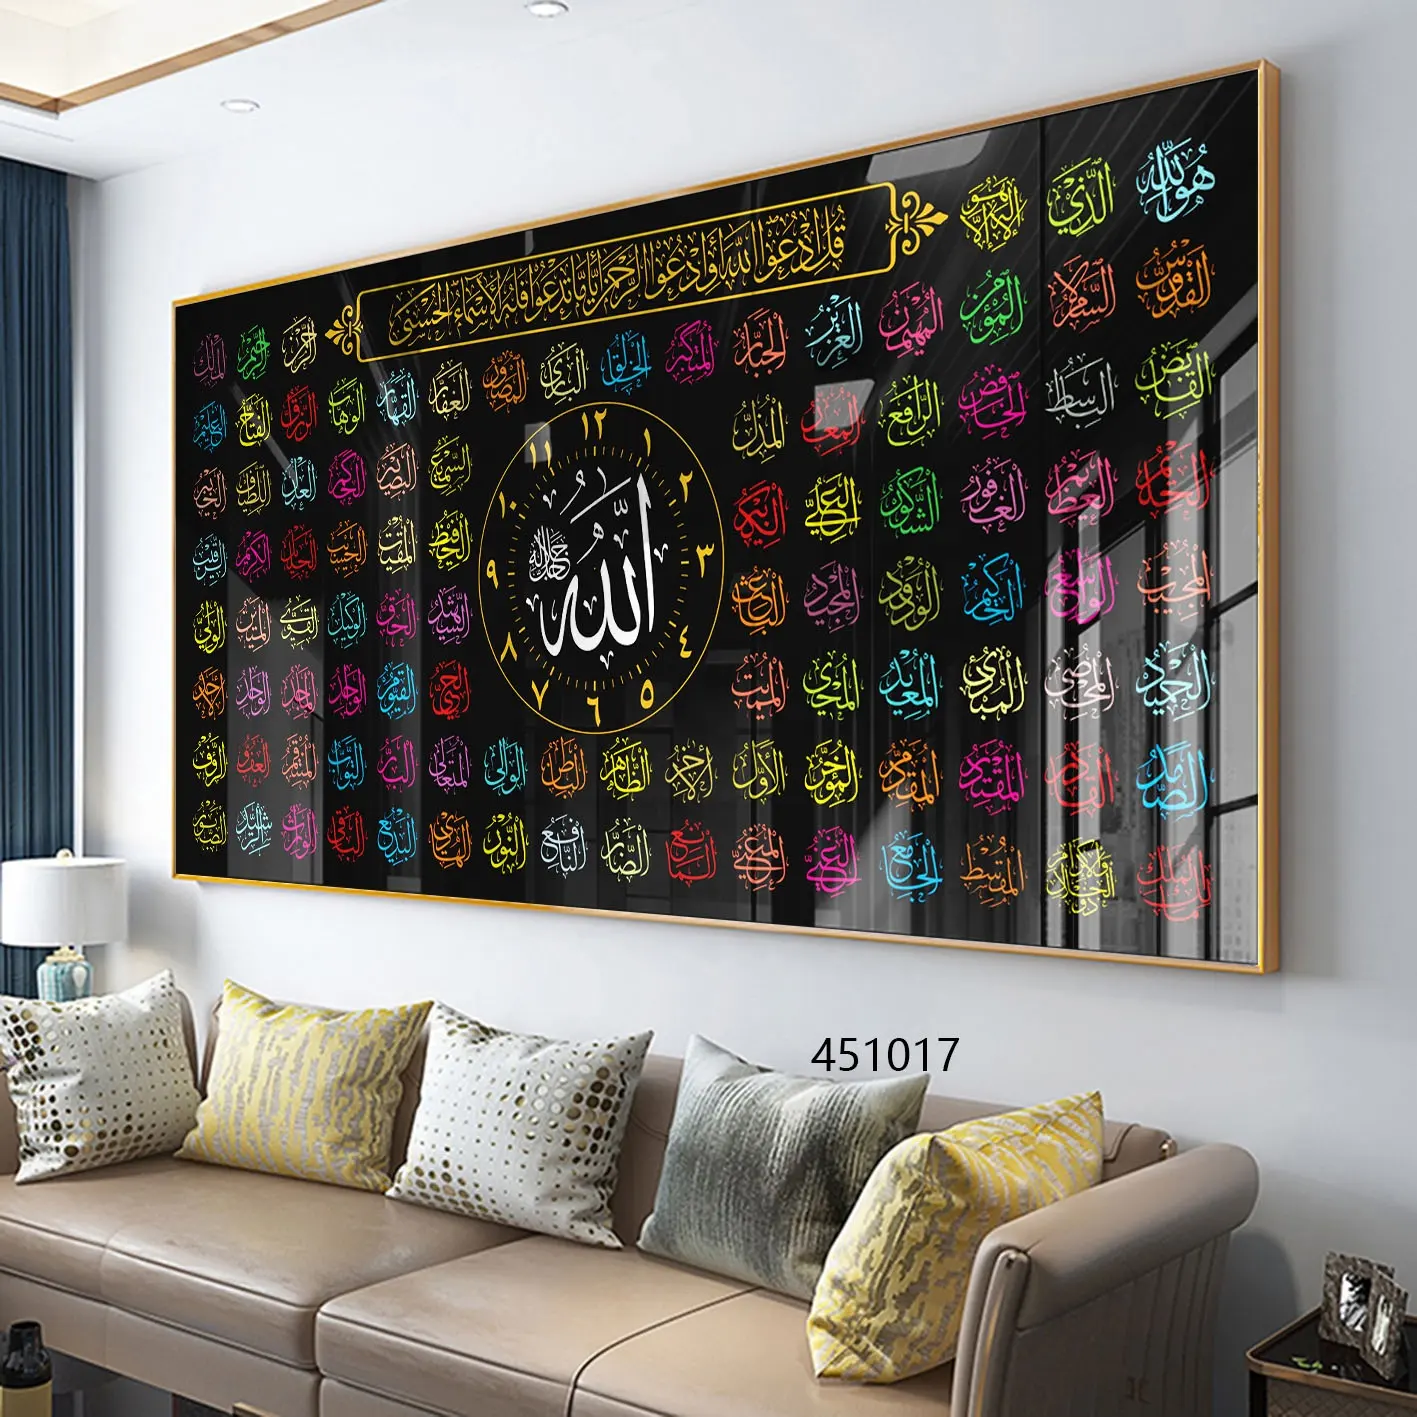 מוסלמי אסלאמי עיצוב הבית אסלאמי אמנות ערבית קליגרפיה מודפס האסלאמי קריסטל פורצלן ציור קיר אמנות